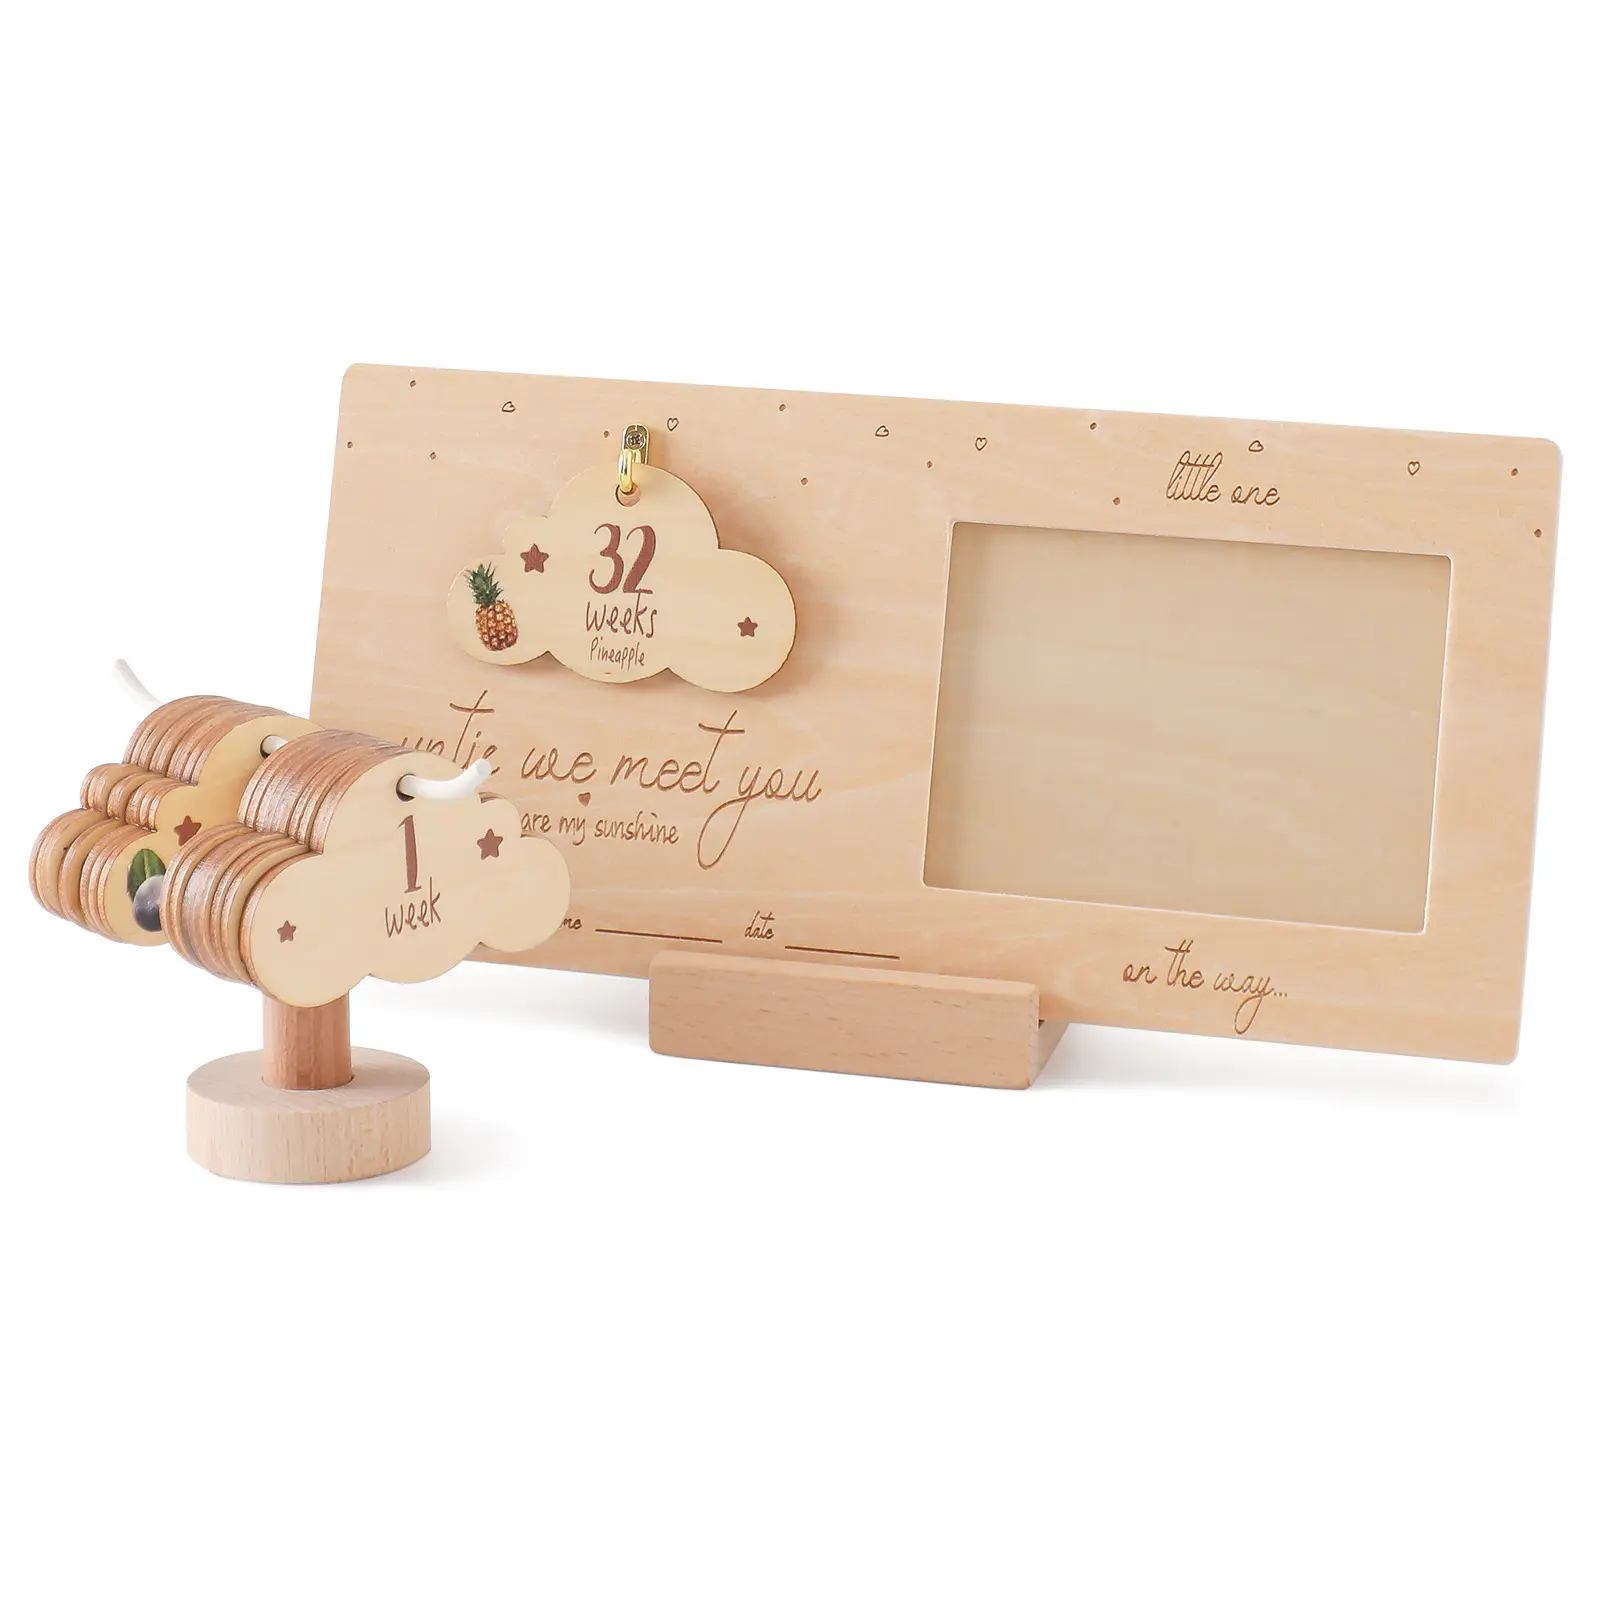 हॉट सेल गर्भावस्था यात्रा मील का पत्थर लकड़ी के साप्ताहिक विकास मील का पत्थर बेबी सोनोग्राम चित्र फ्रेम